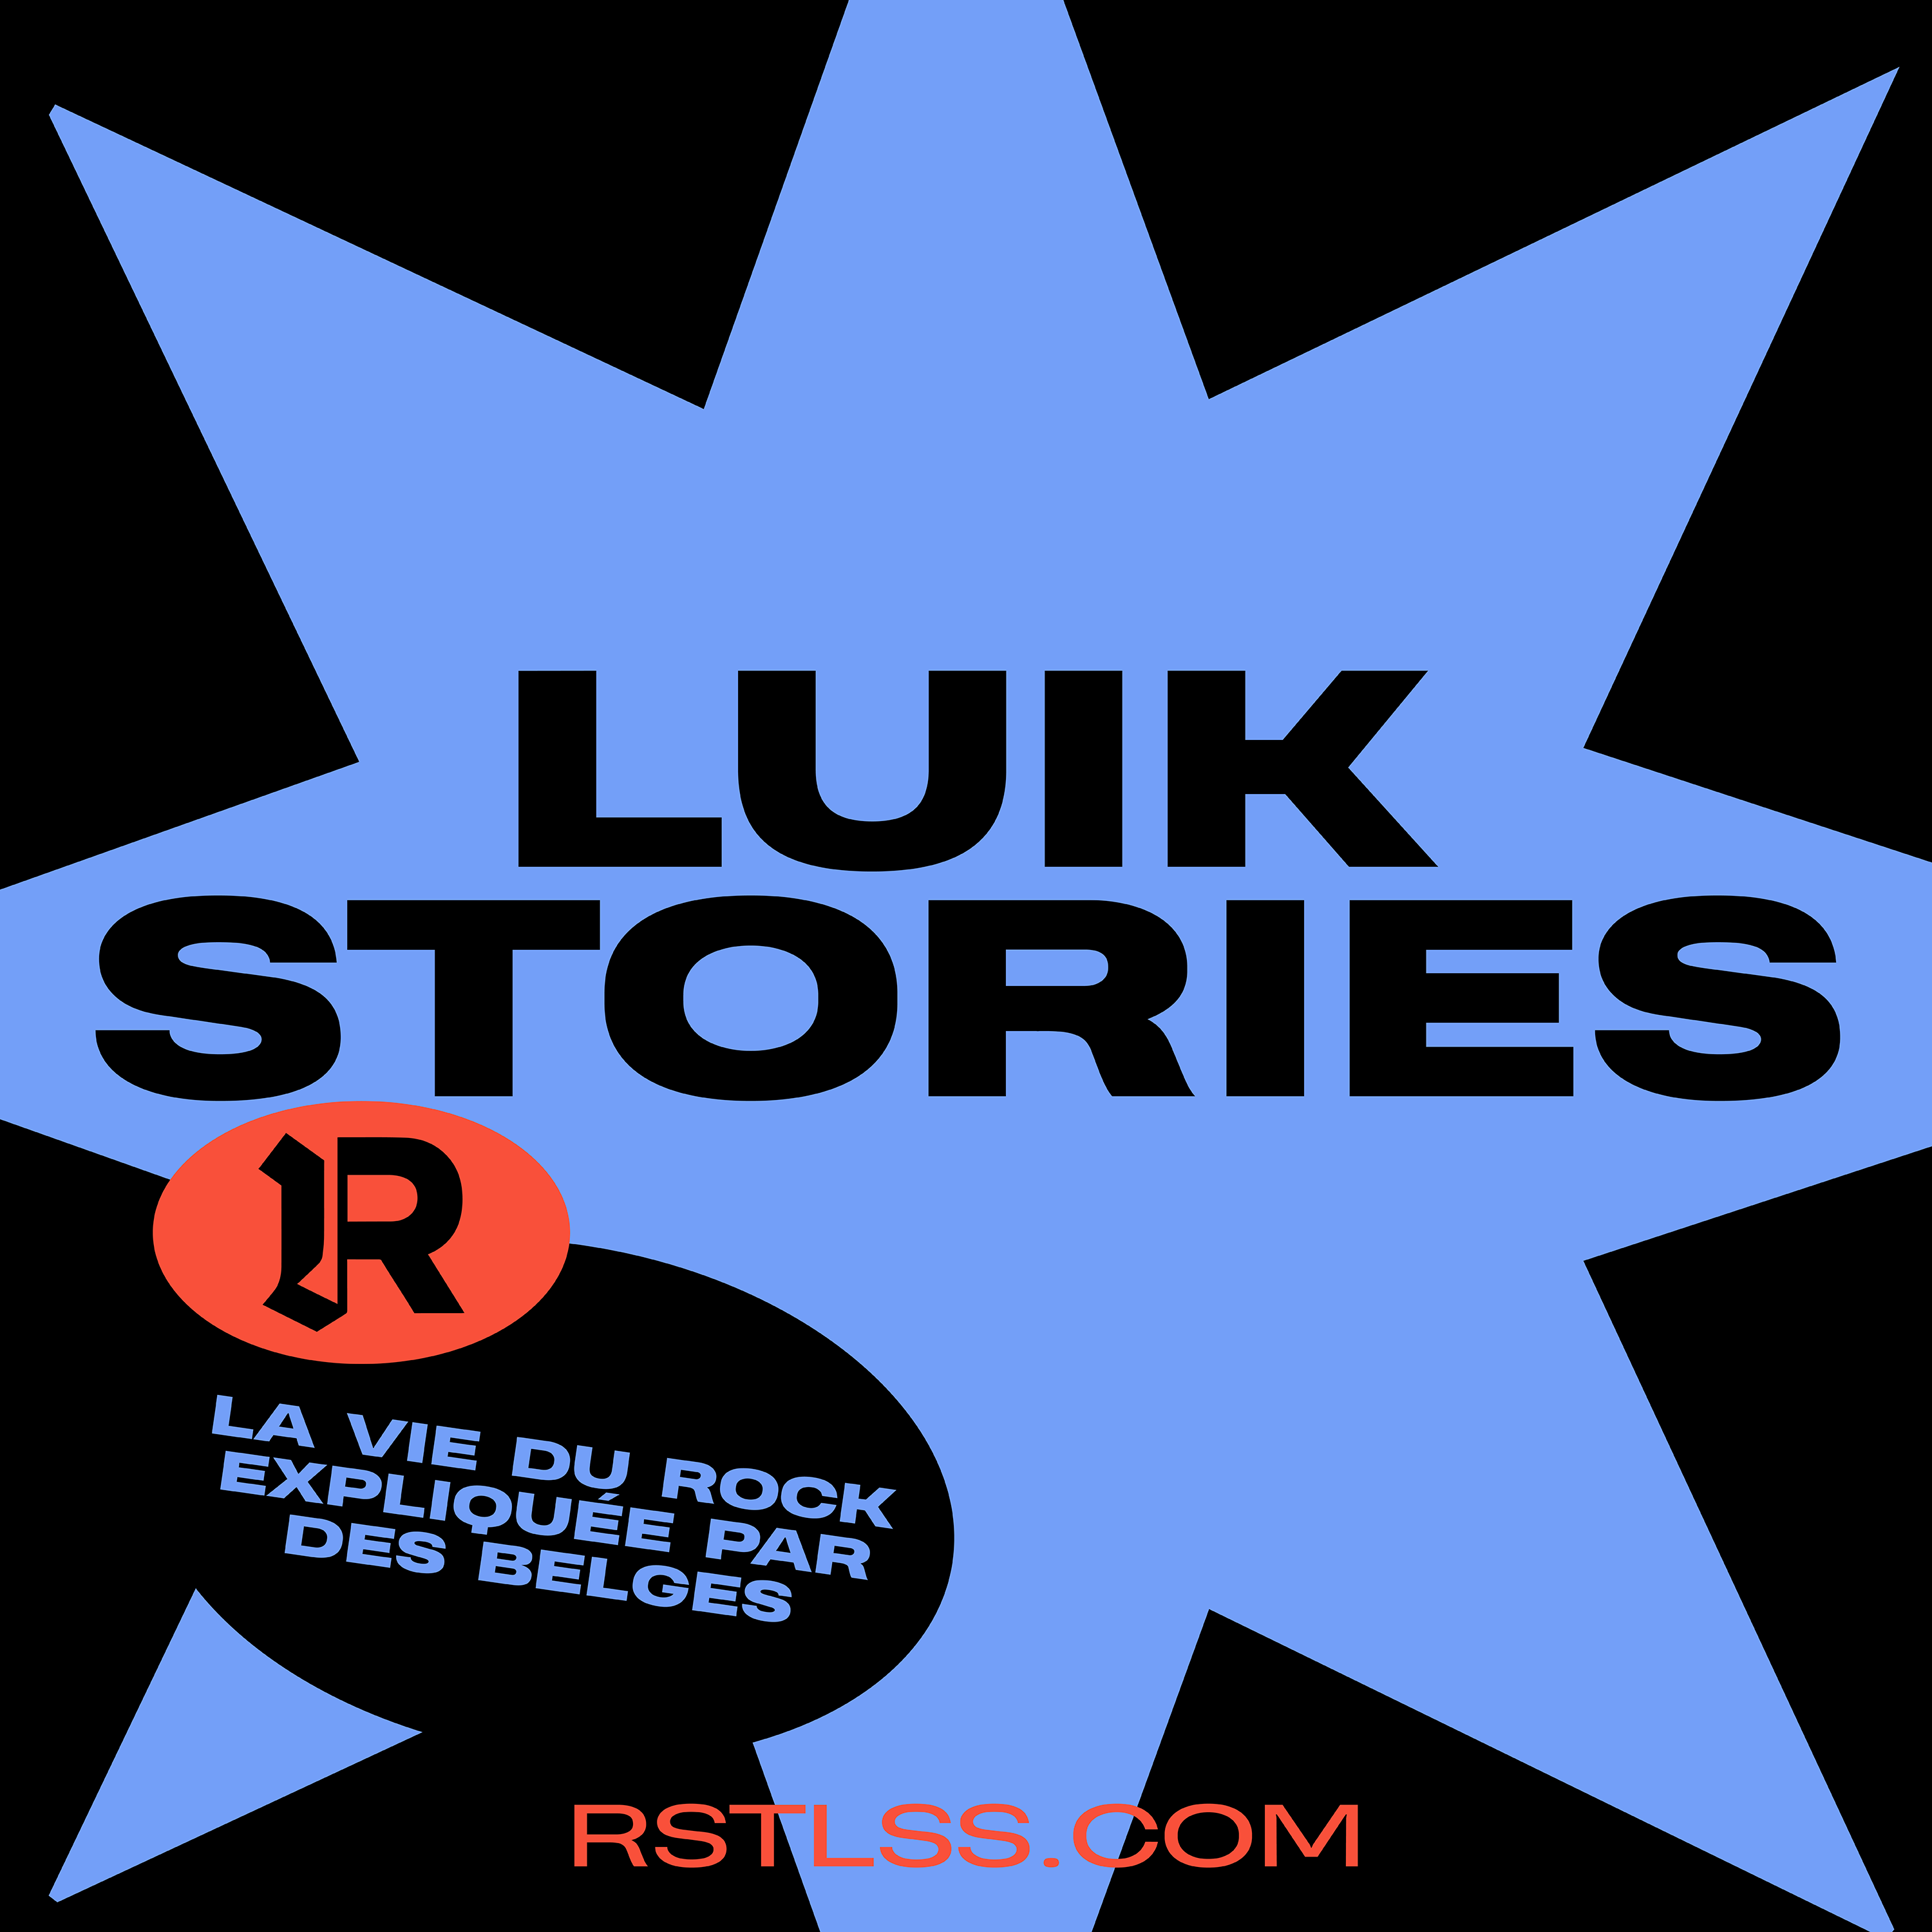 LUIK STORIES #1 – Lysistrata